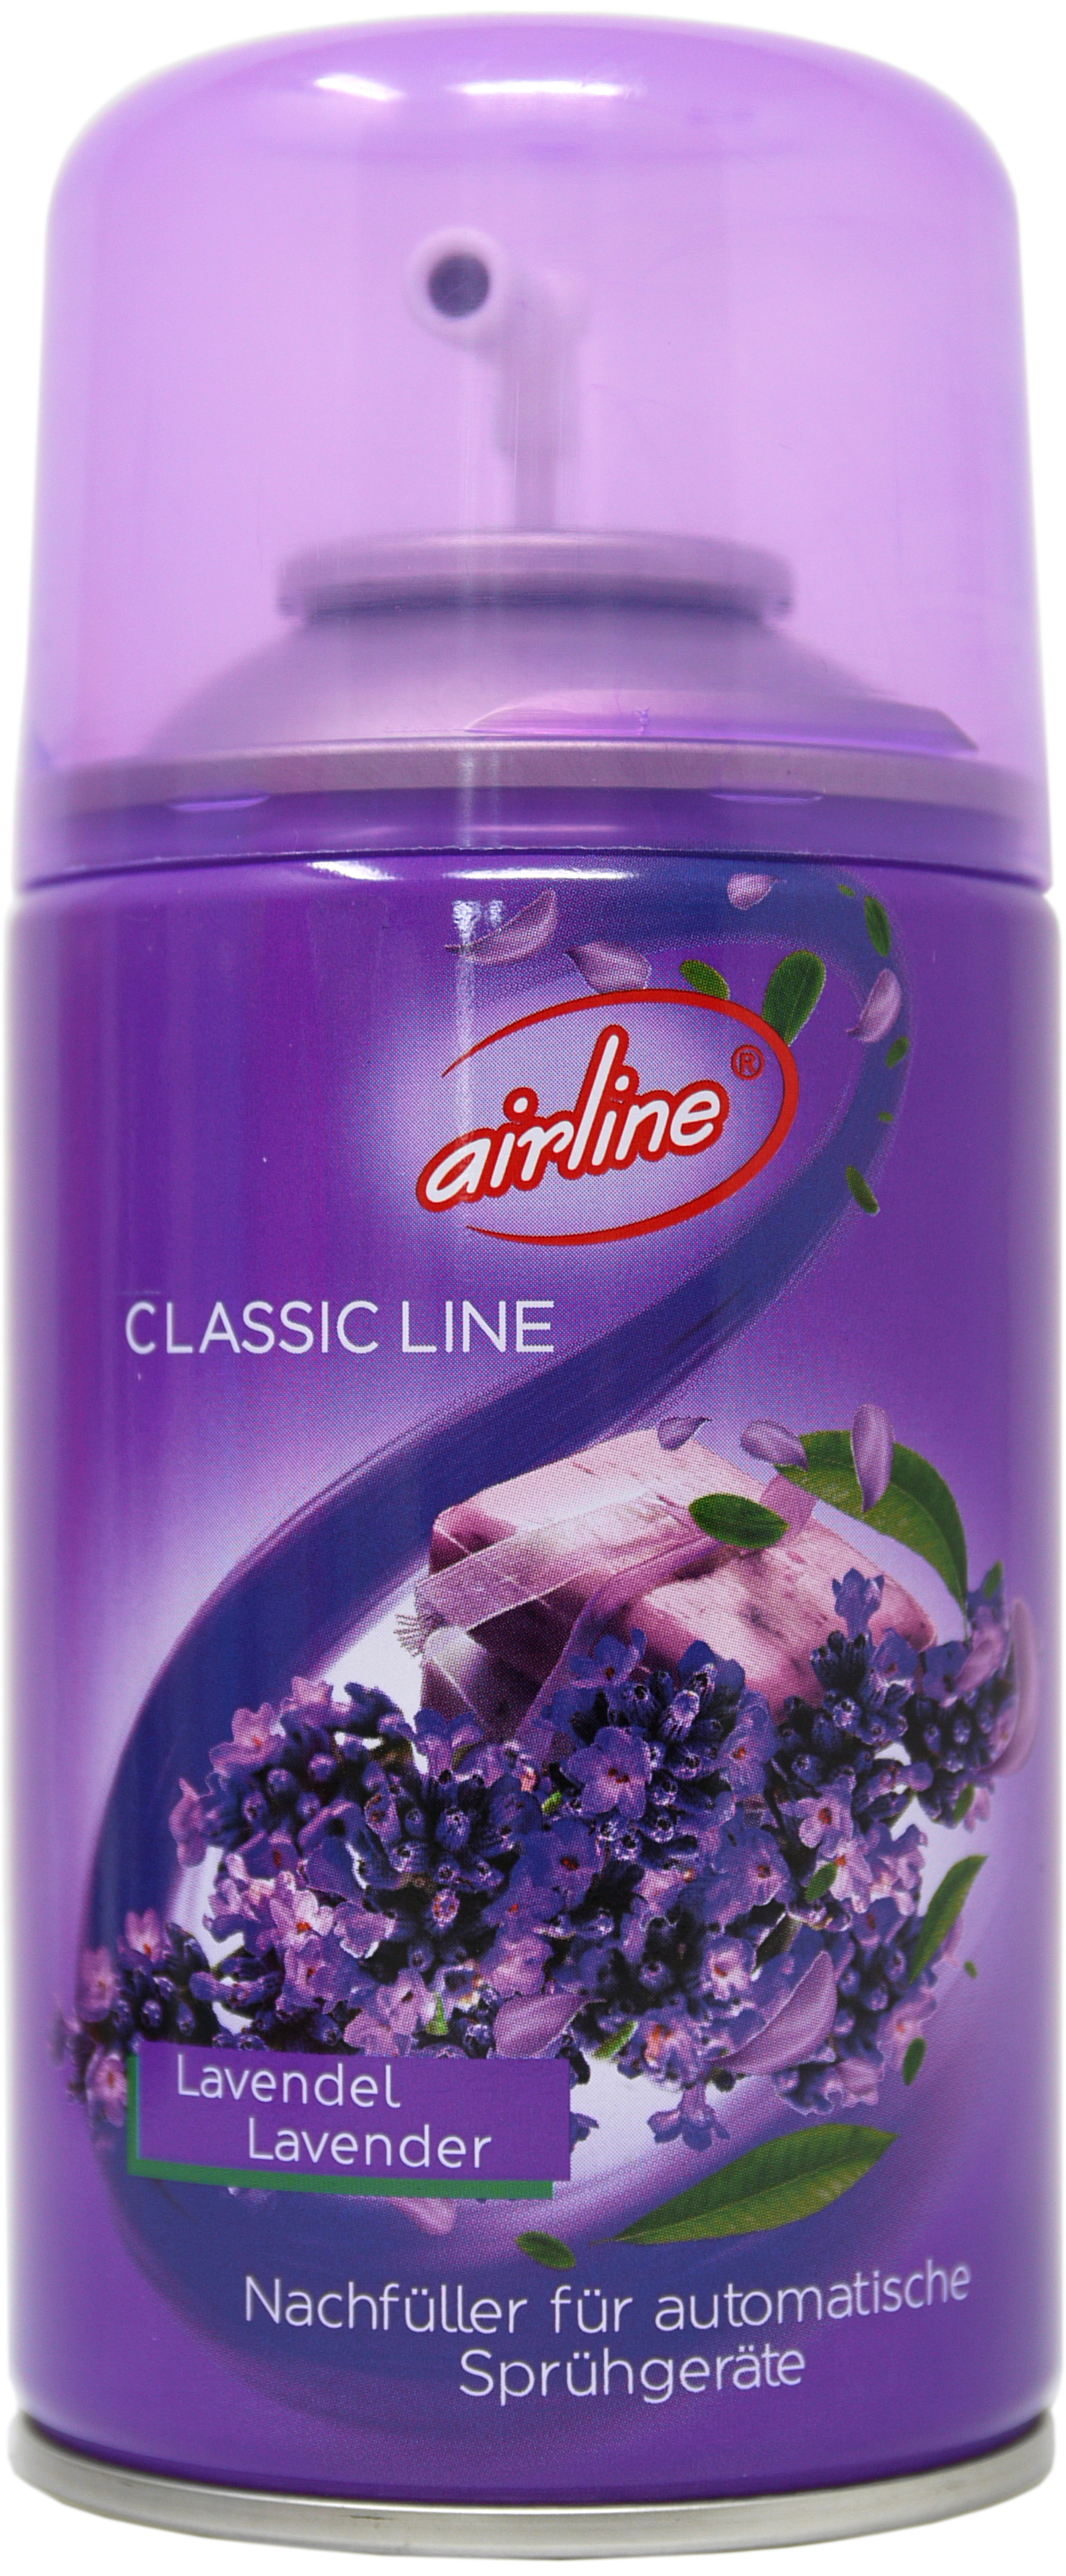 00504 - Classic Line lavender refill 250 ml